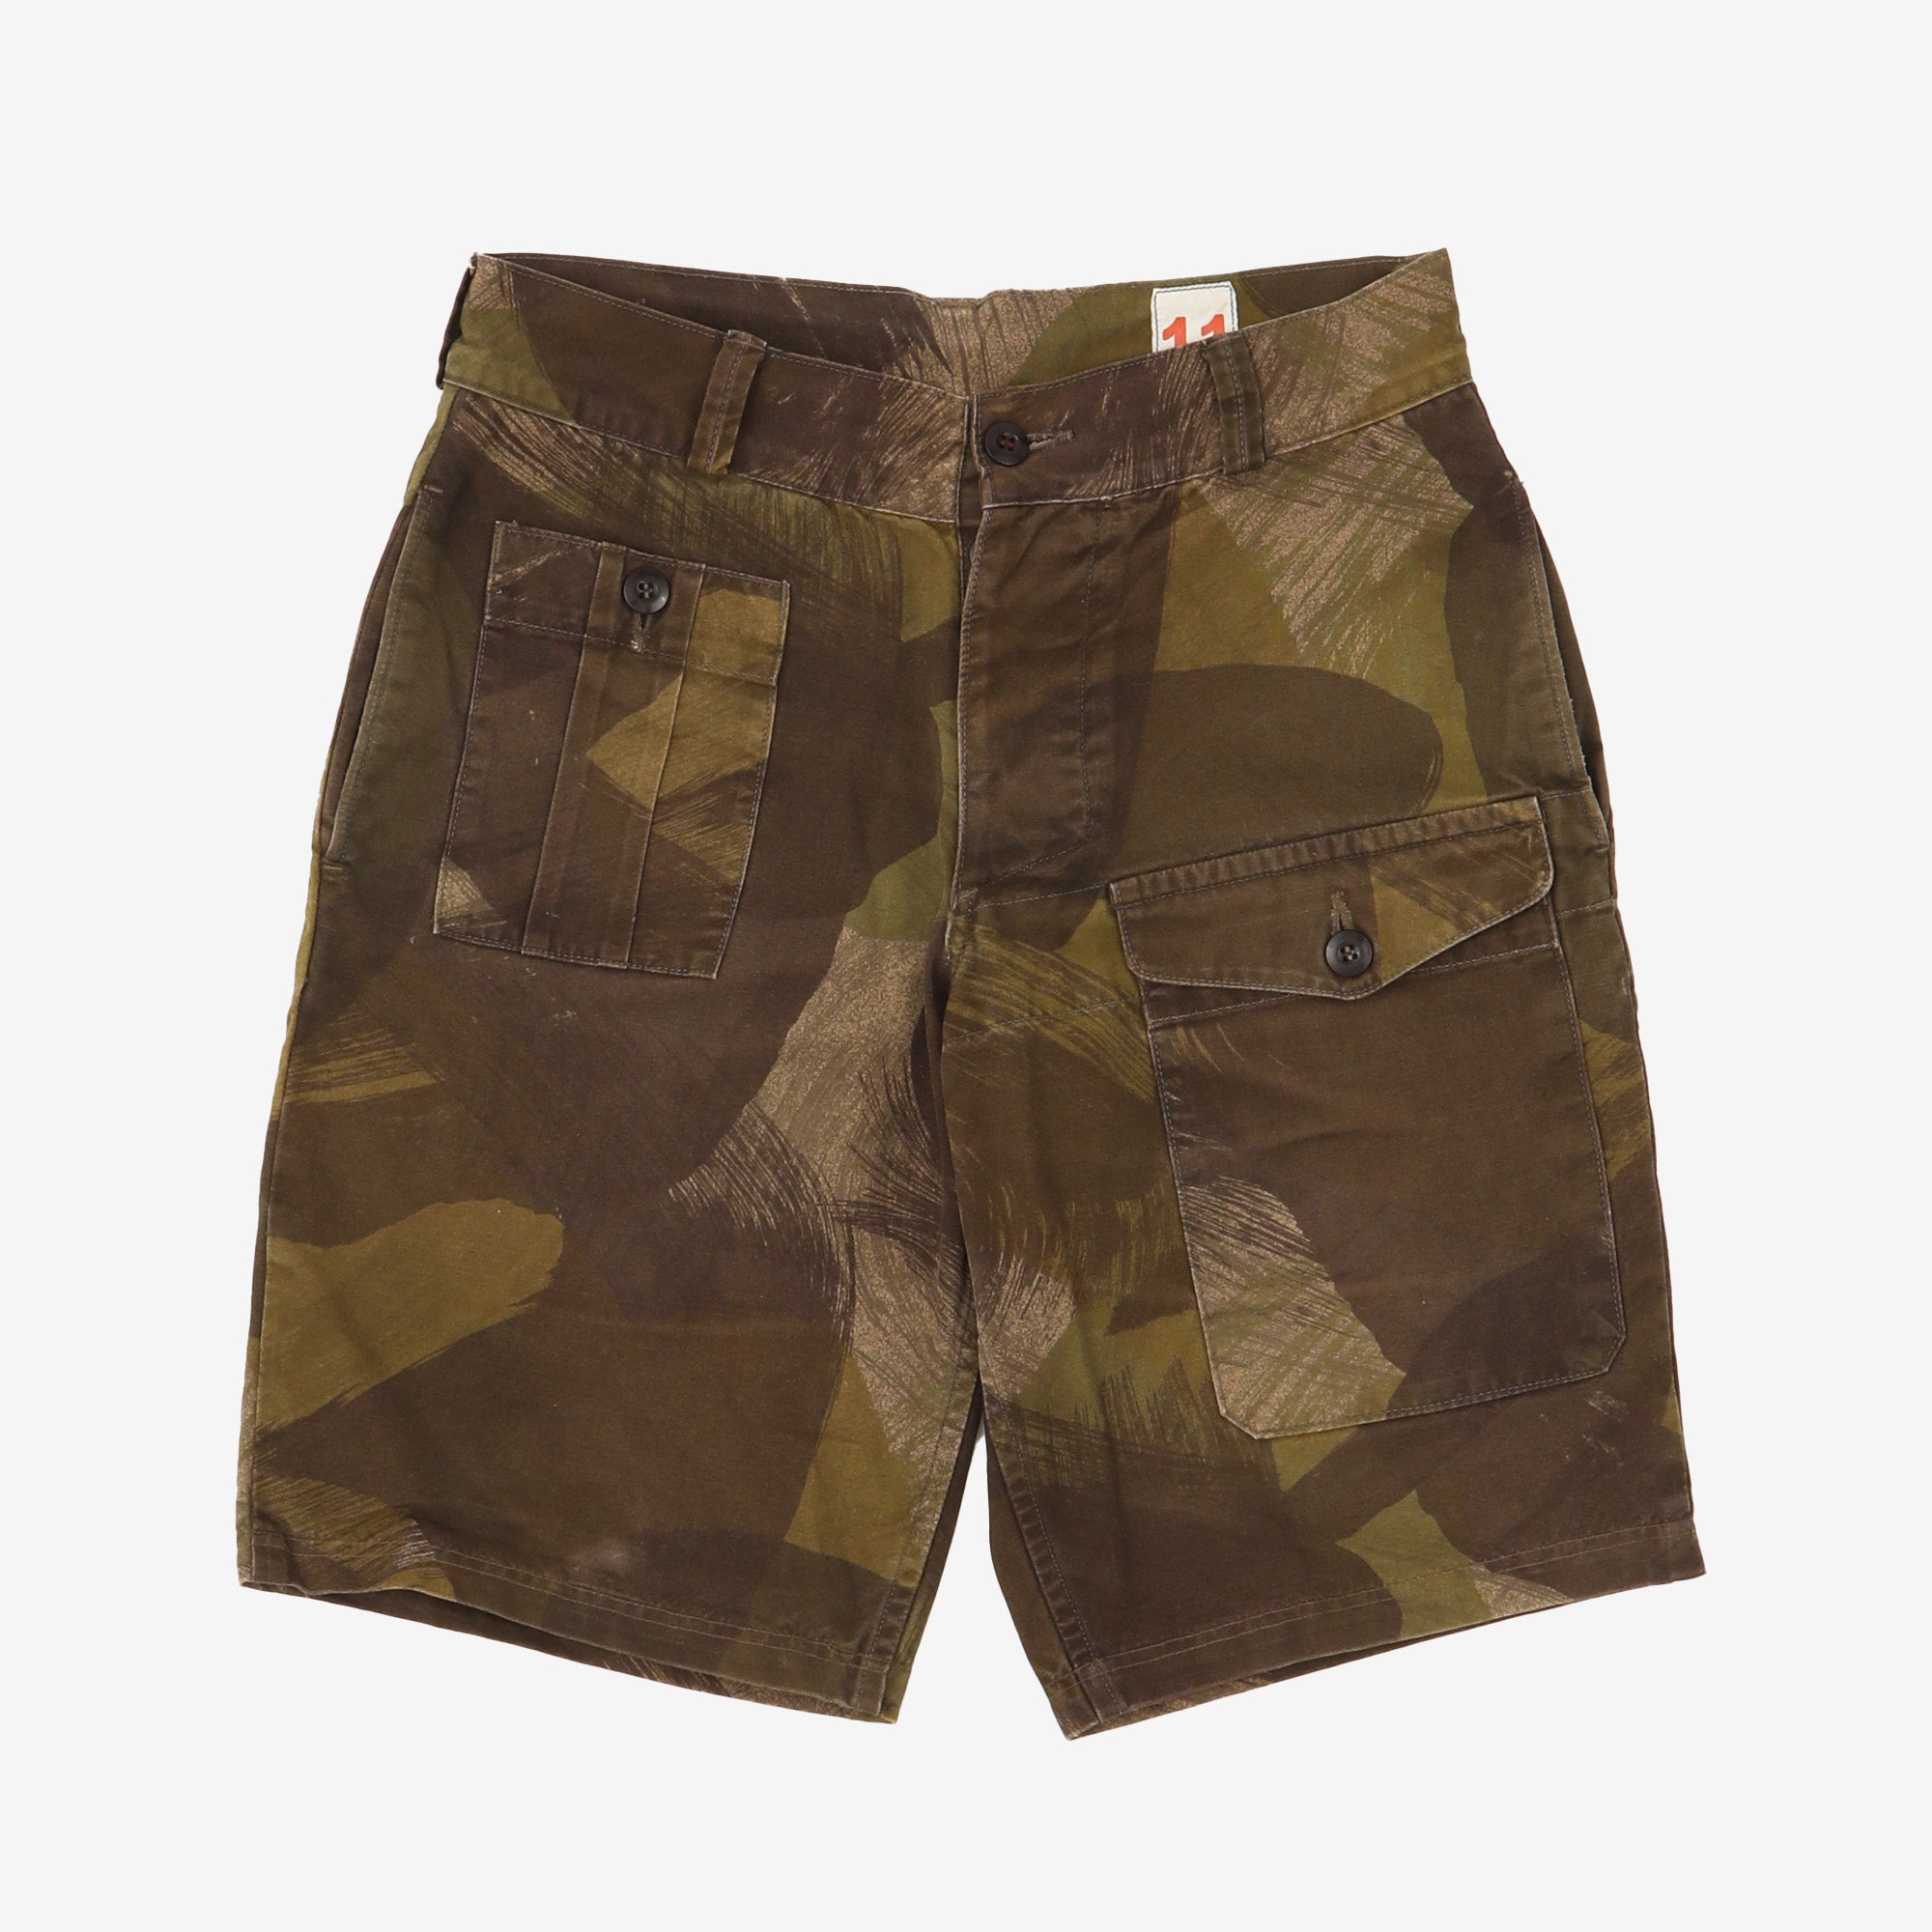 Rhodesian Army Camo Shorts